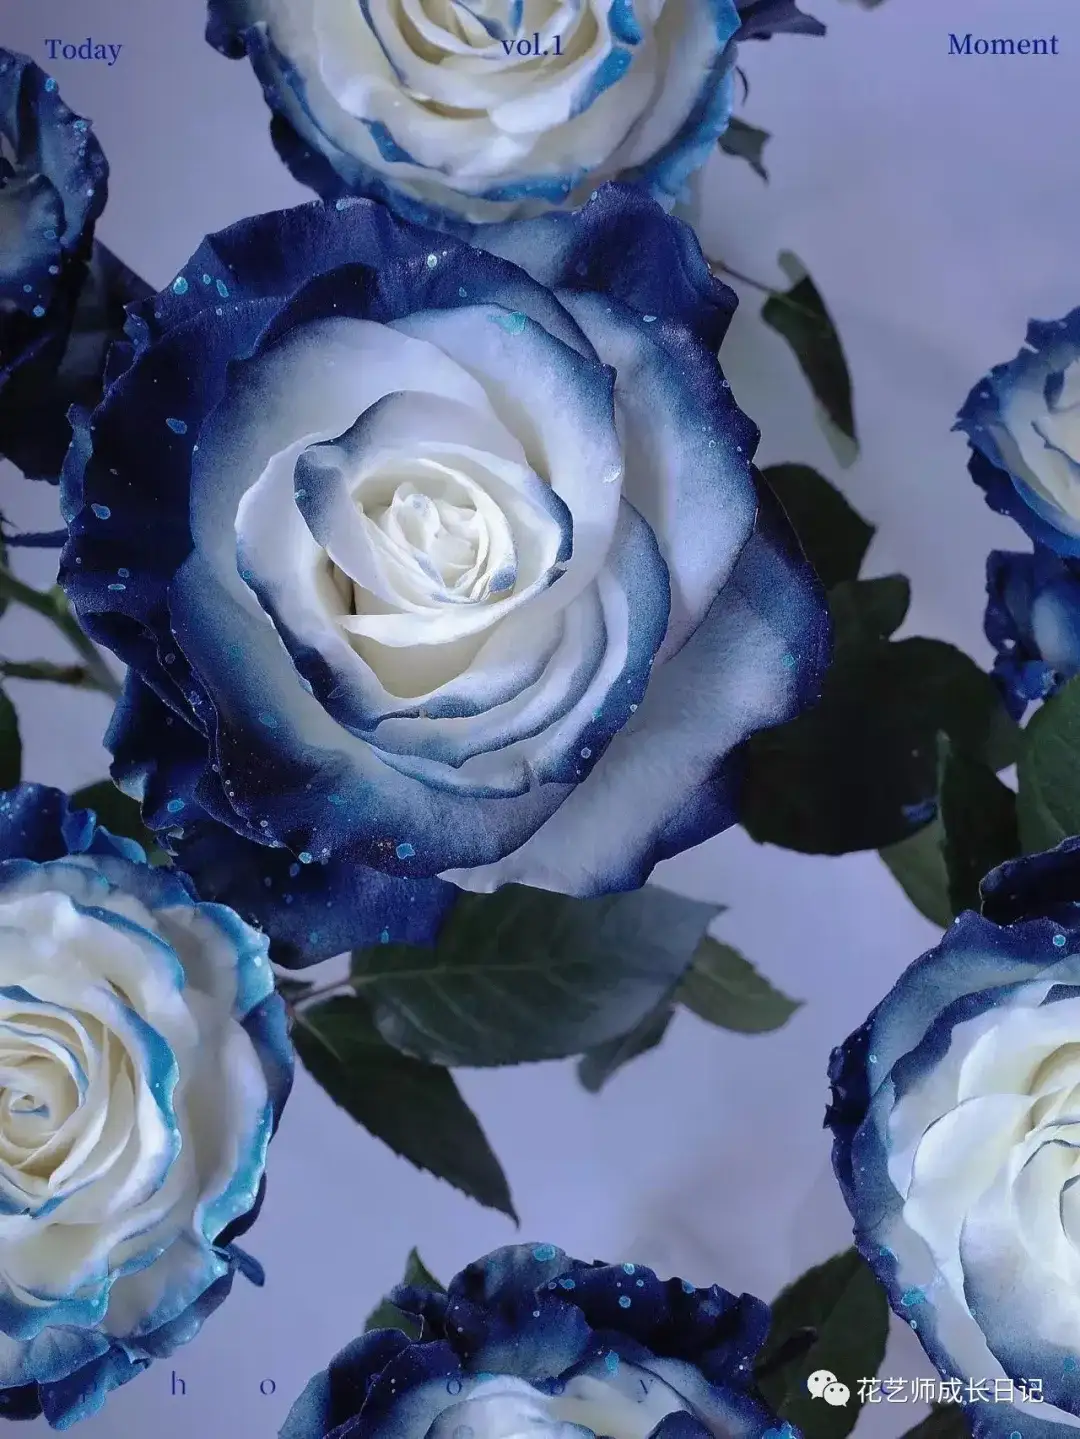 100朵玫瑰vol.56 | 厄瓜多尔银河玫瑰milky way，在浪漫宇宙中盛放的蓝玫瑰！ - 知乎